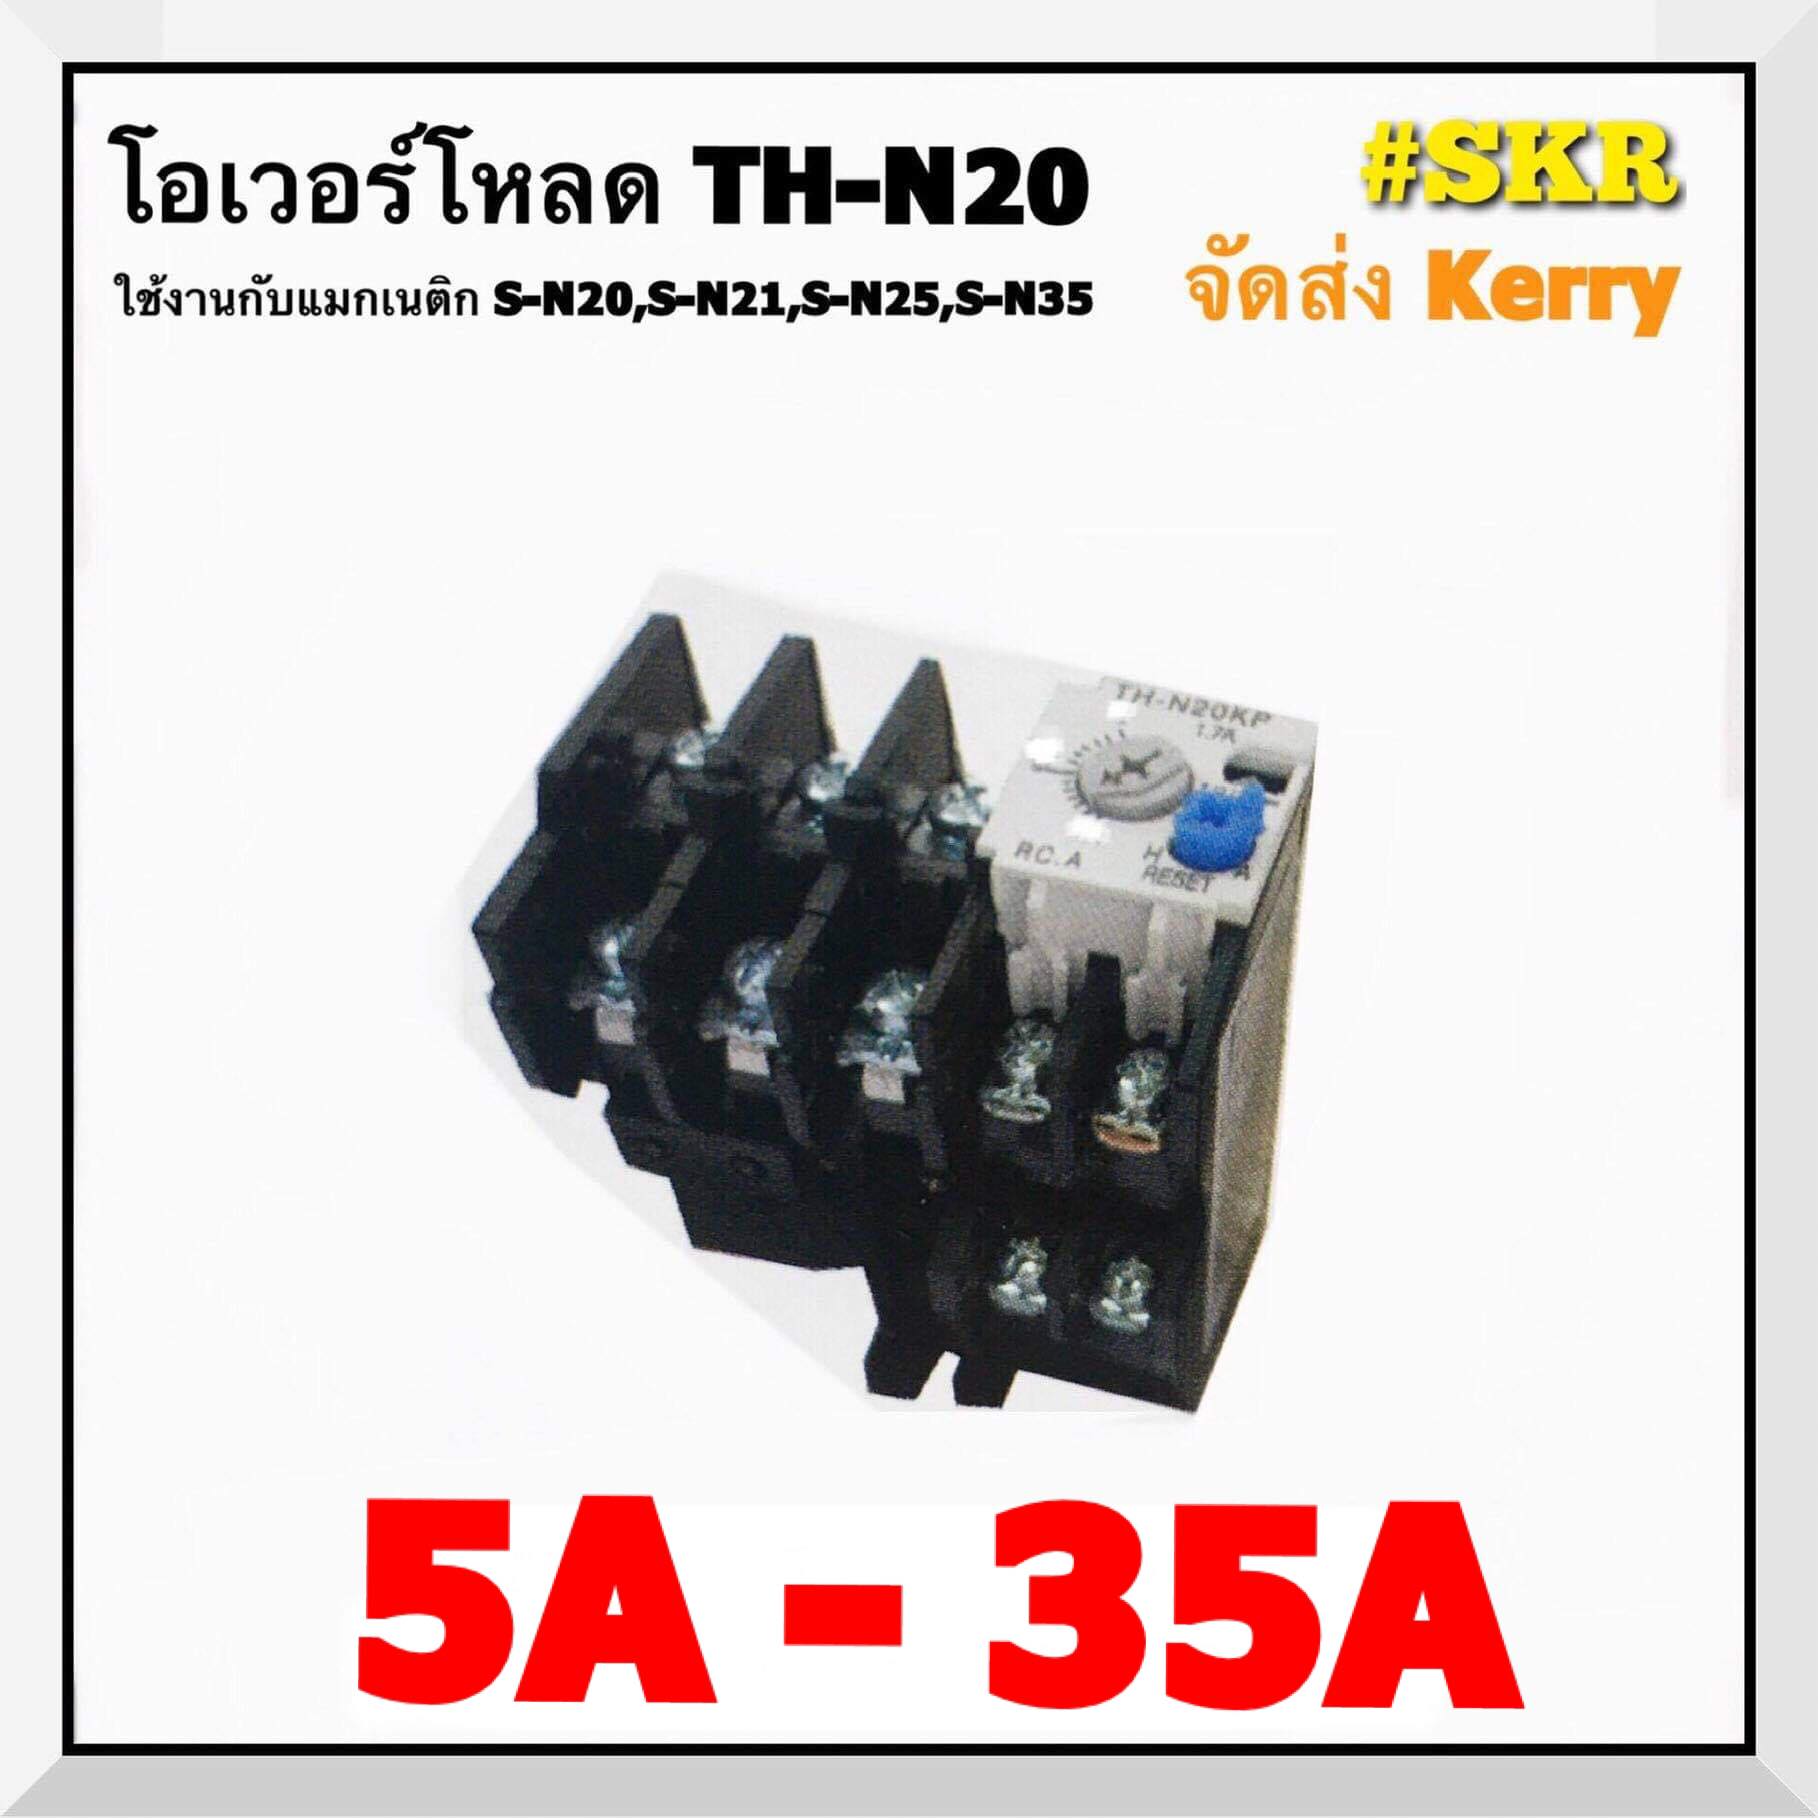 โอเวอร์โหลด TH-N20 ยี่ห้อ BF มี 5A-35A ใช้กับ แมกเนติก S-N20,S-N21,S-N25,S-N35 แมกเนติก จัดส่งKerry